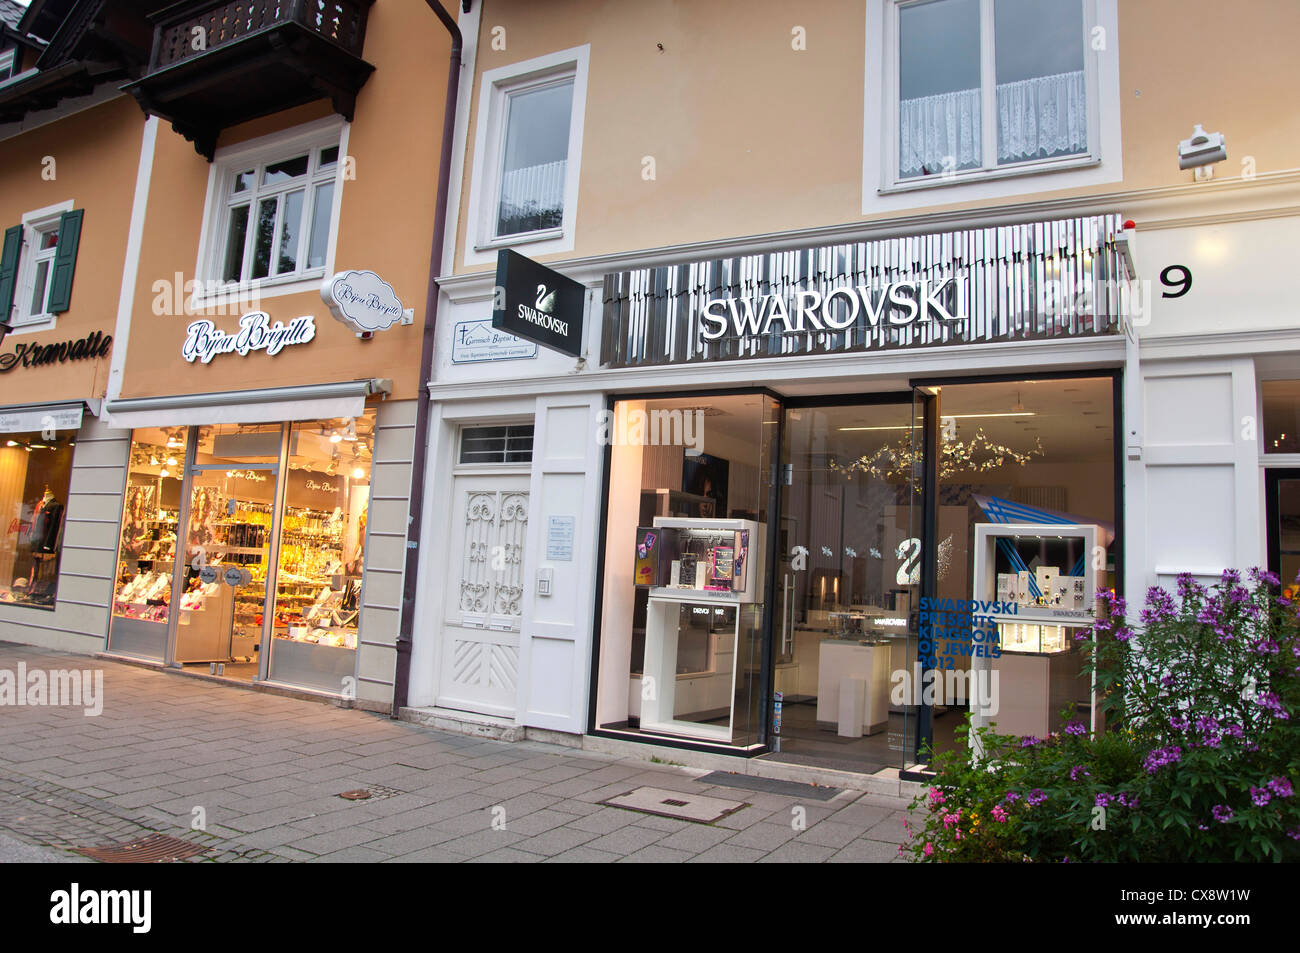 Swarovski Store, Germany Stock Photo - Alamy